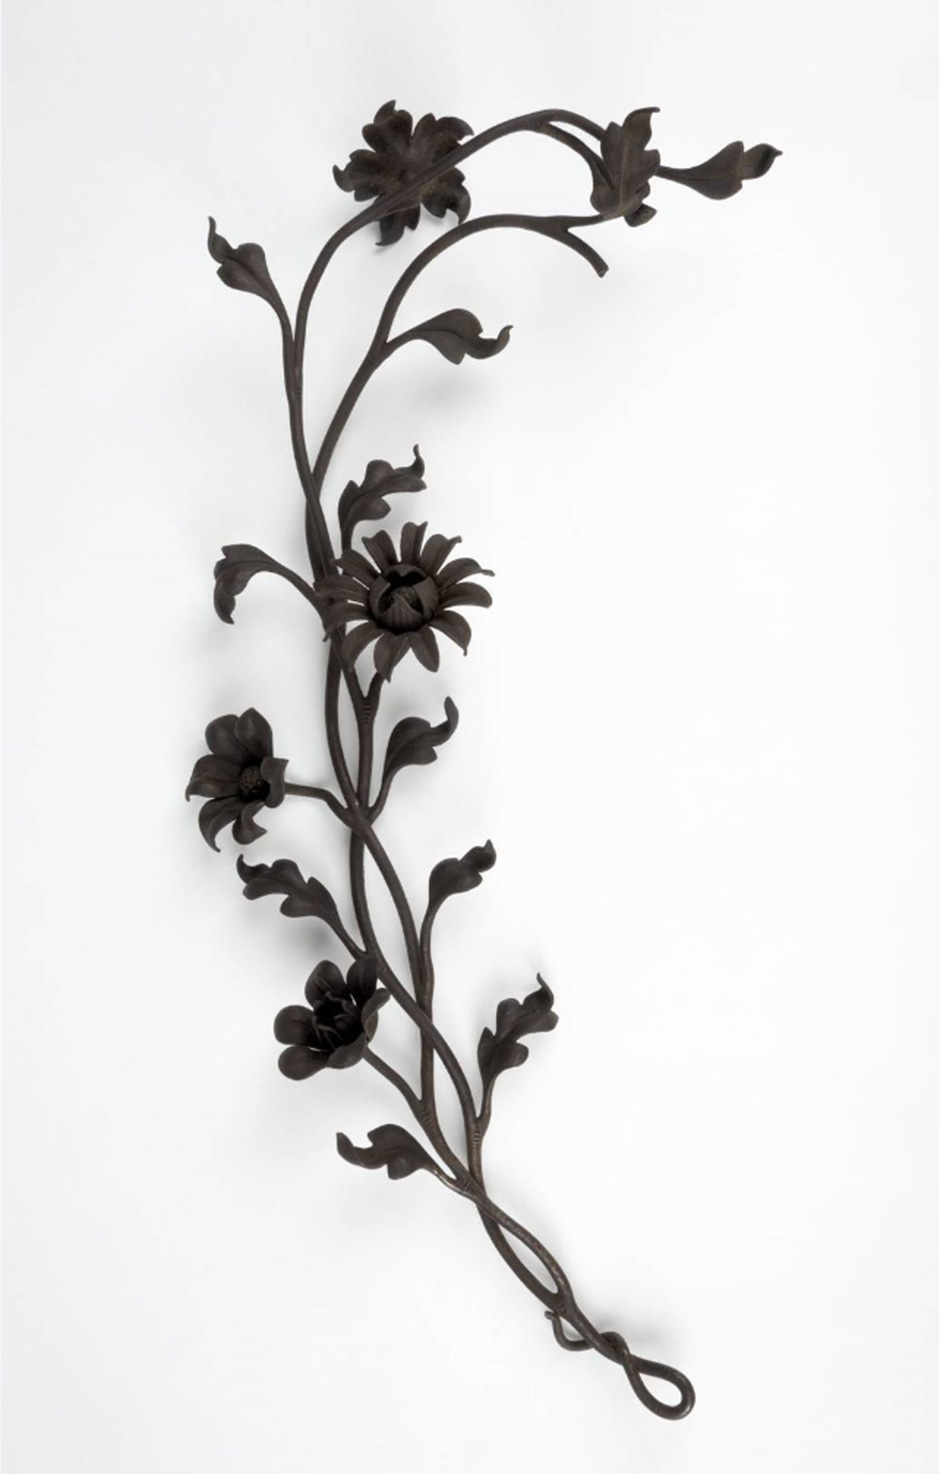 MAK Archivbild 92: Zierstück Blütenzweig, Eisen geschwärzt, HxB 37,5x20 cm, 1867 bis 1900